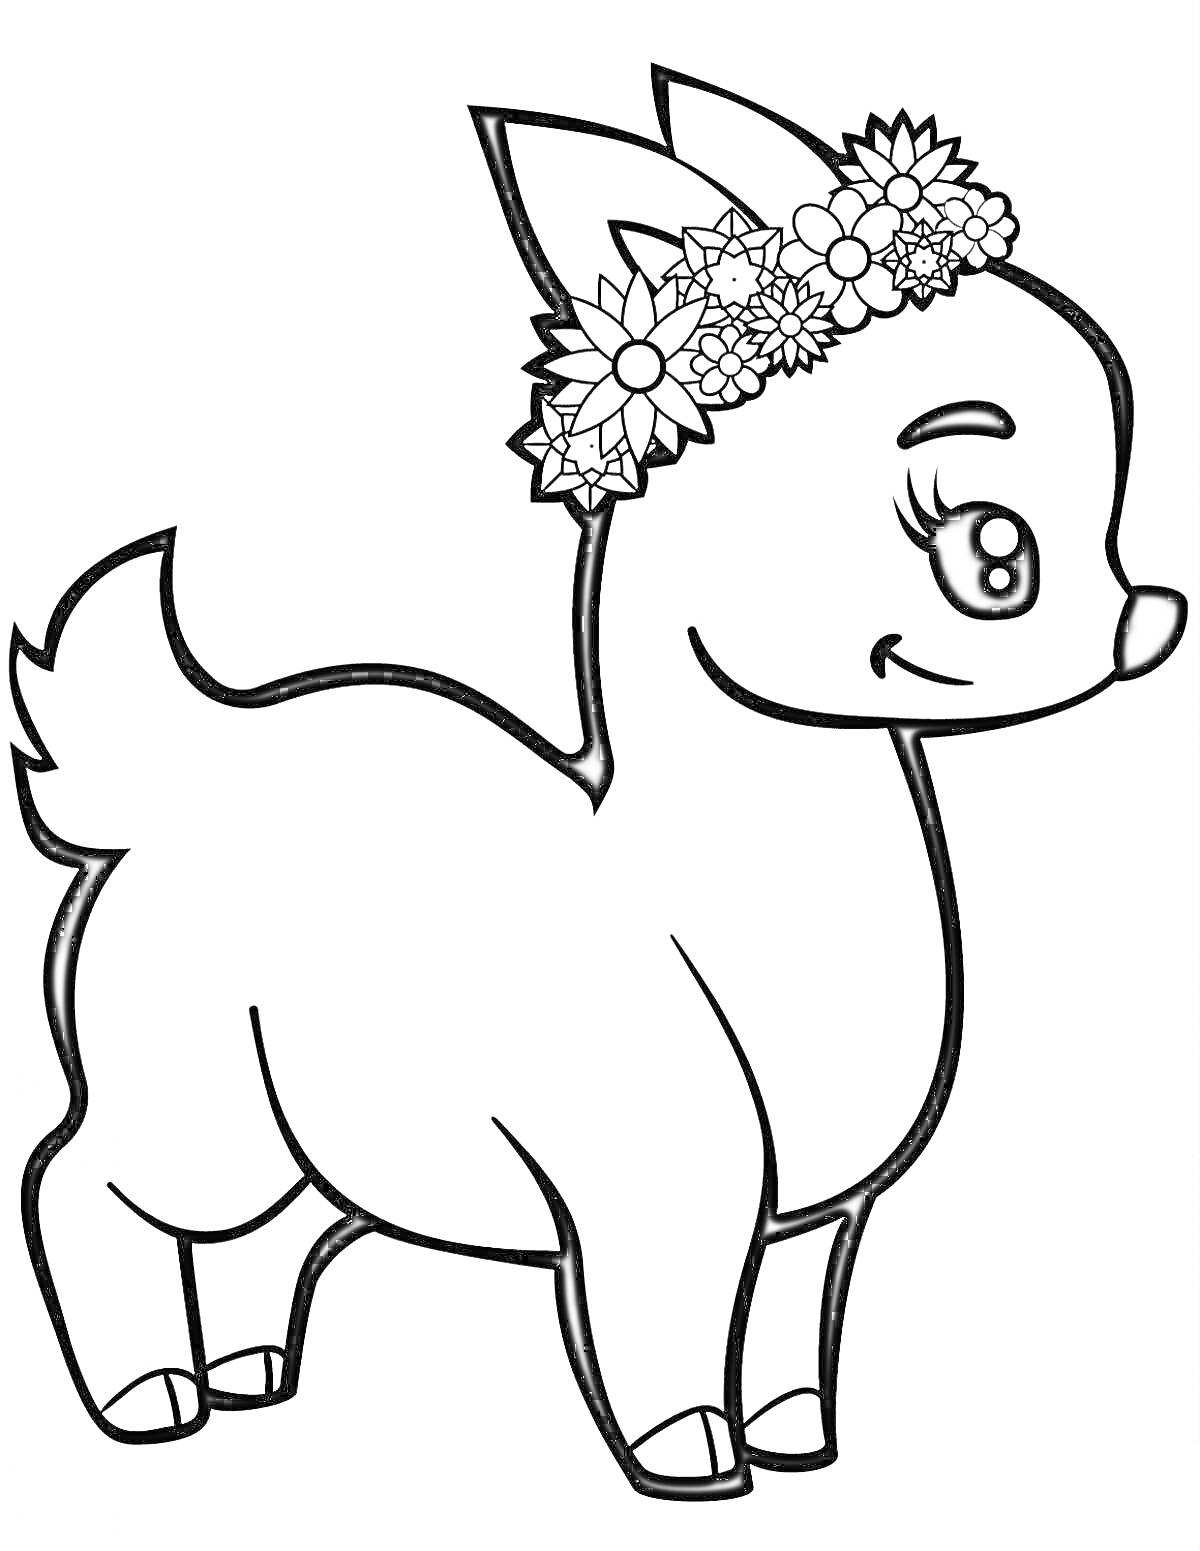 Раскраска Олененок с цветочным венком на голове